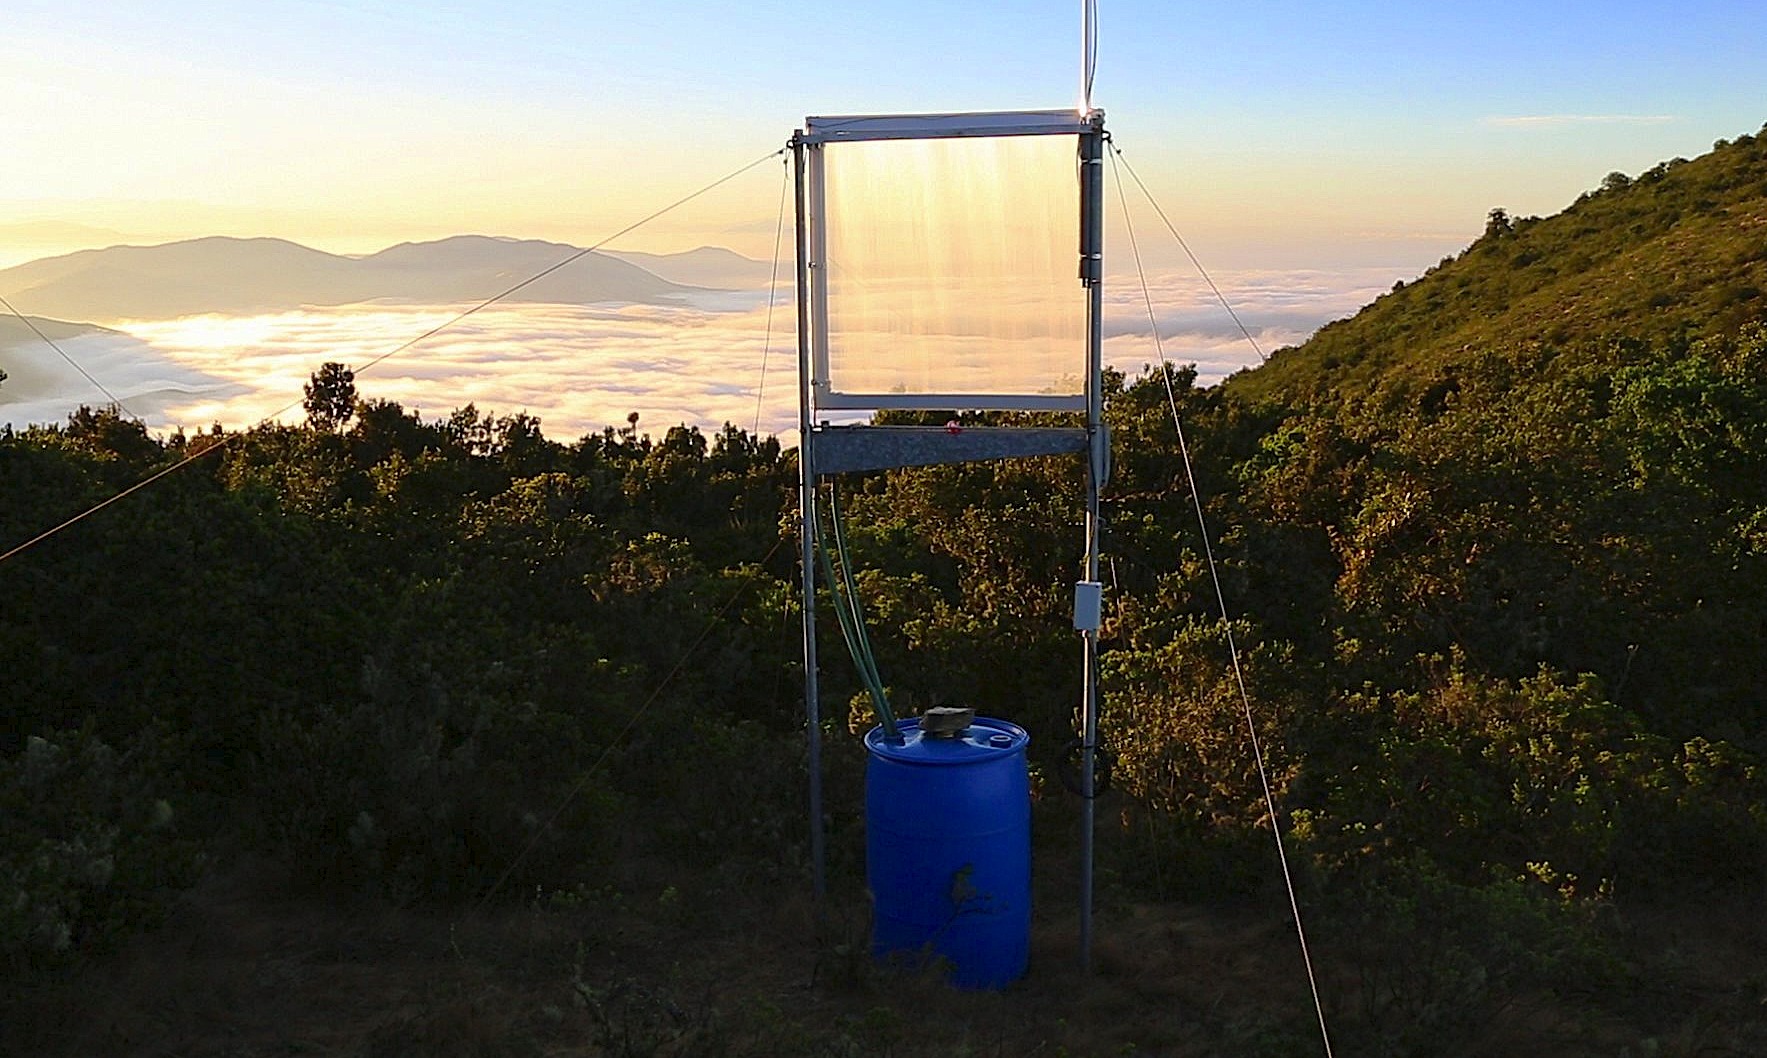 Proyecto académico desarrolla innovador sistema recolector de niebla para pequeñas comunidades